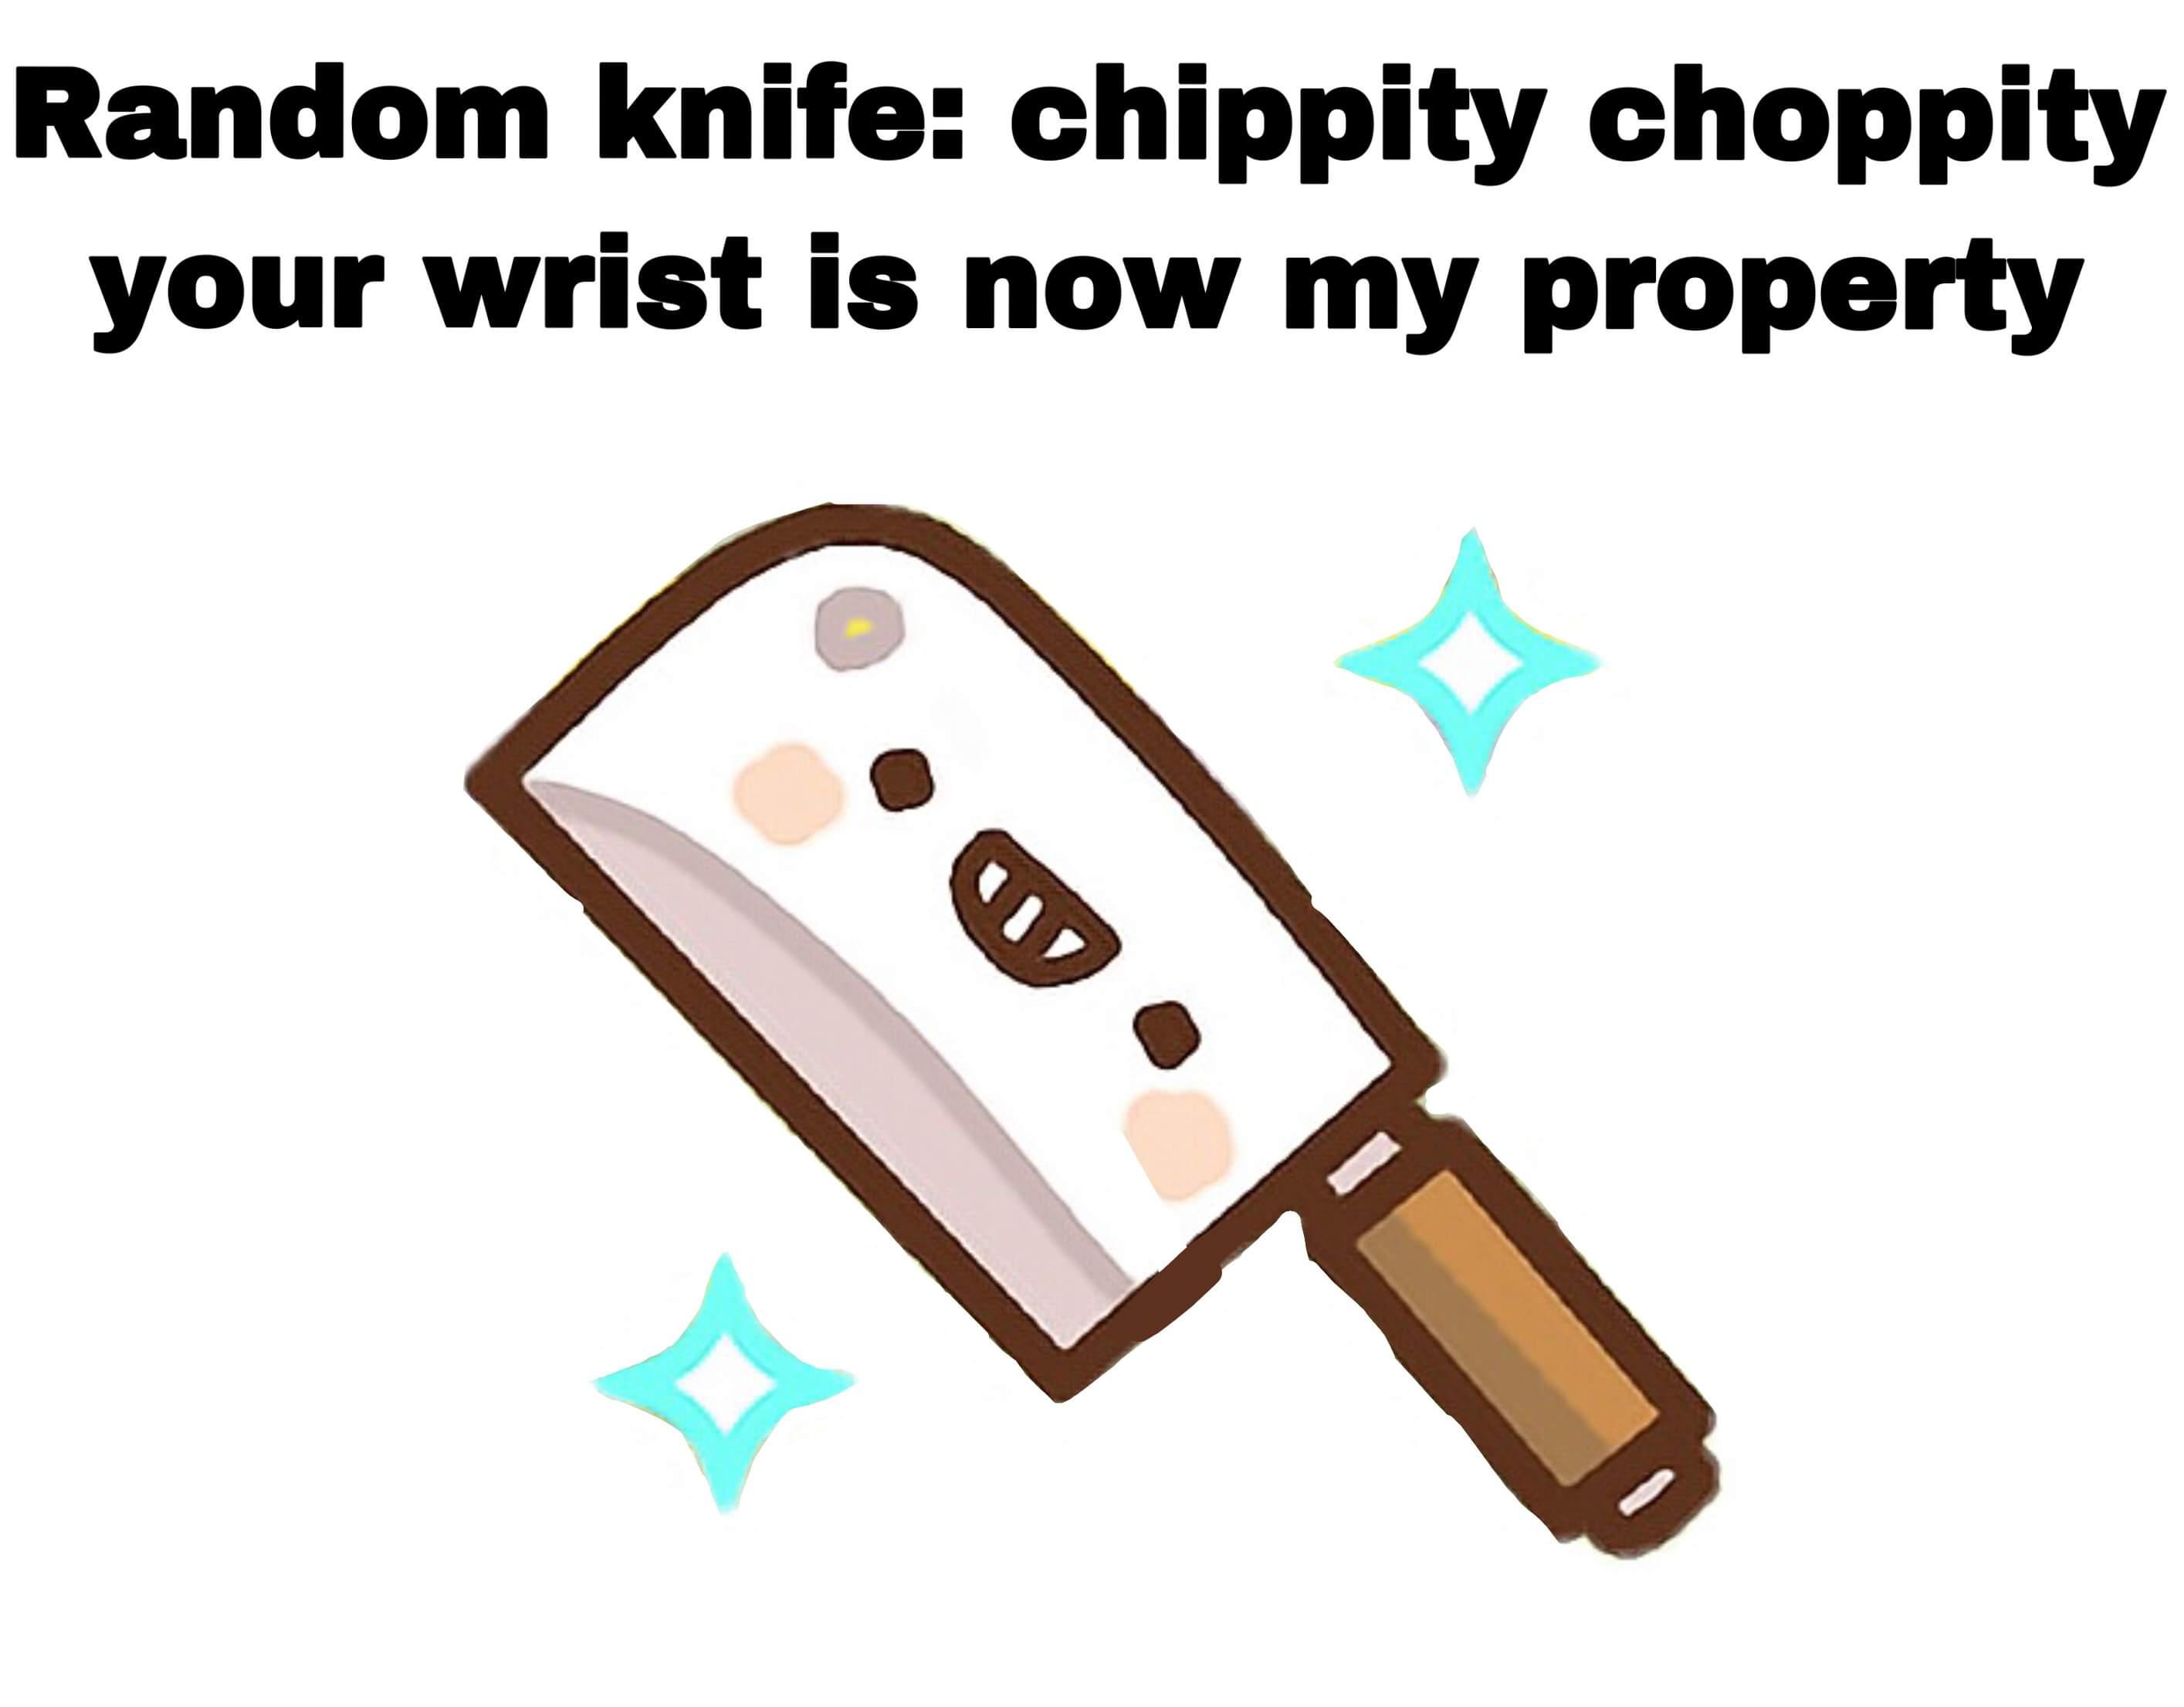 Random knife chippity choppity your wrist is now my property